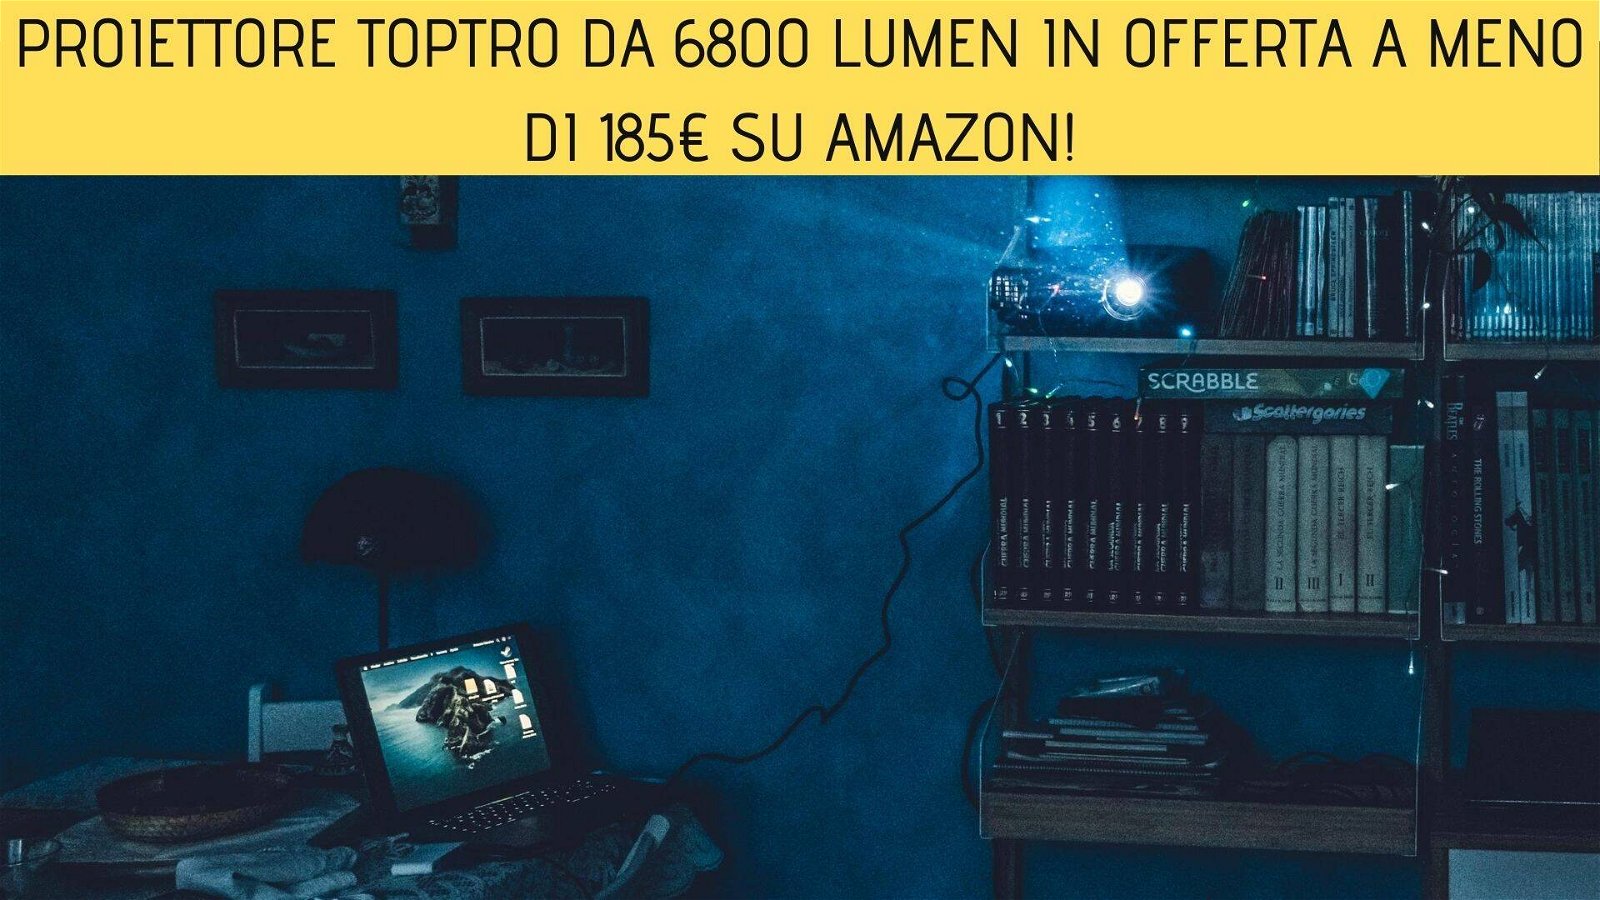 Immagine di Proiettore TOPTRO da 6800 Lumen in offerta a meno di 185€ su Amazon!